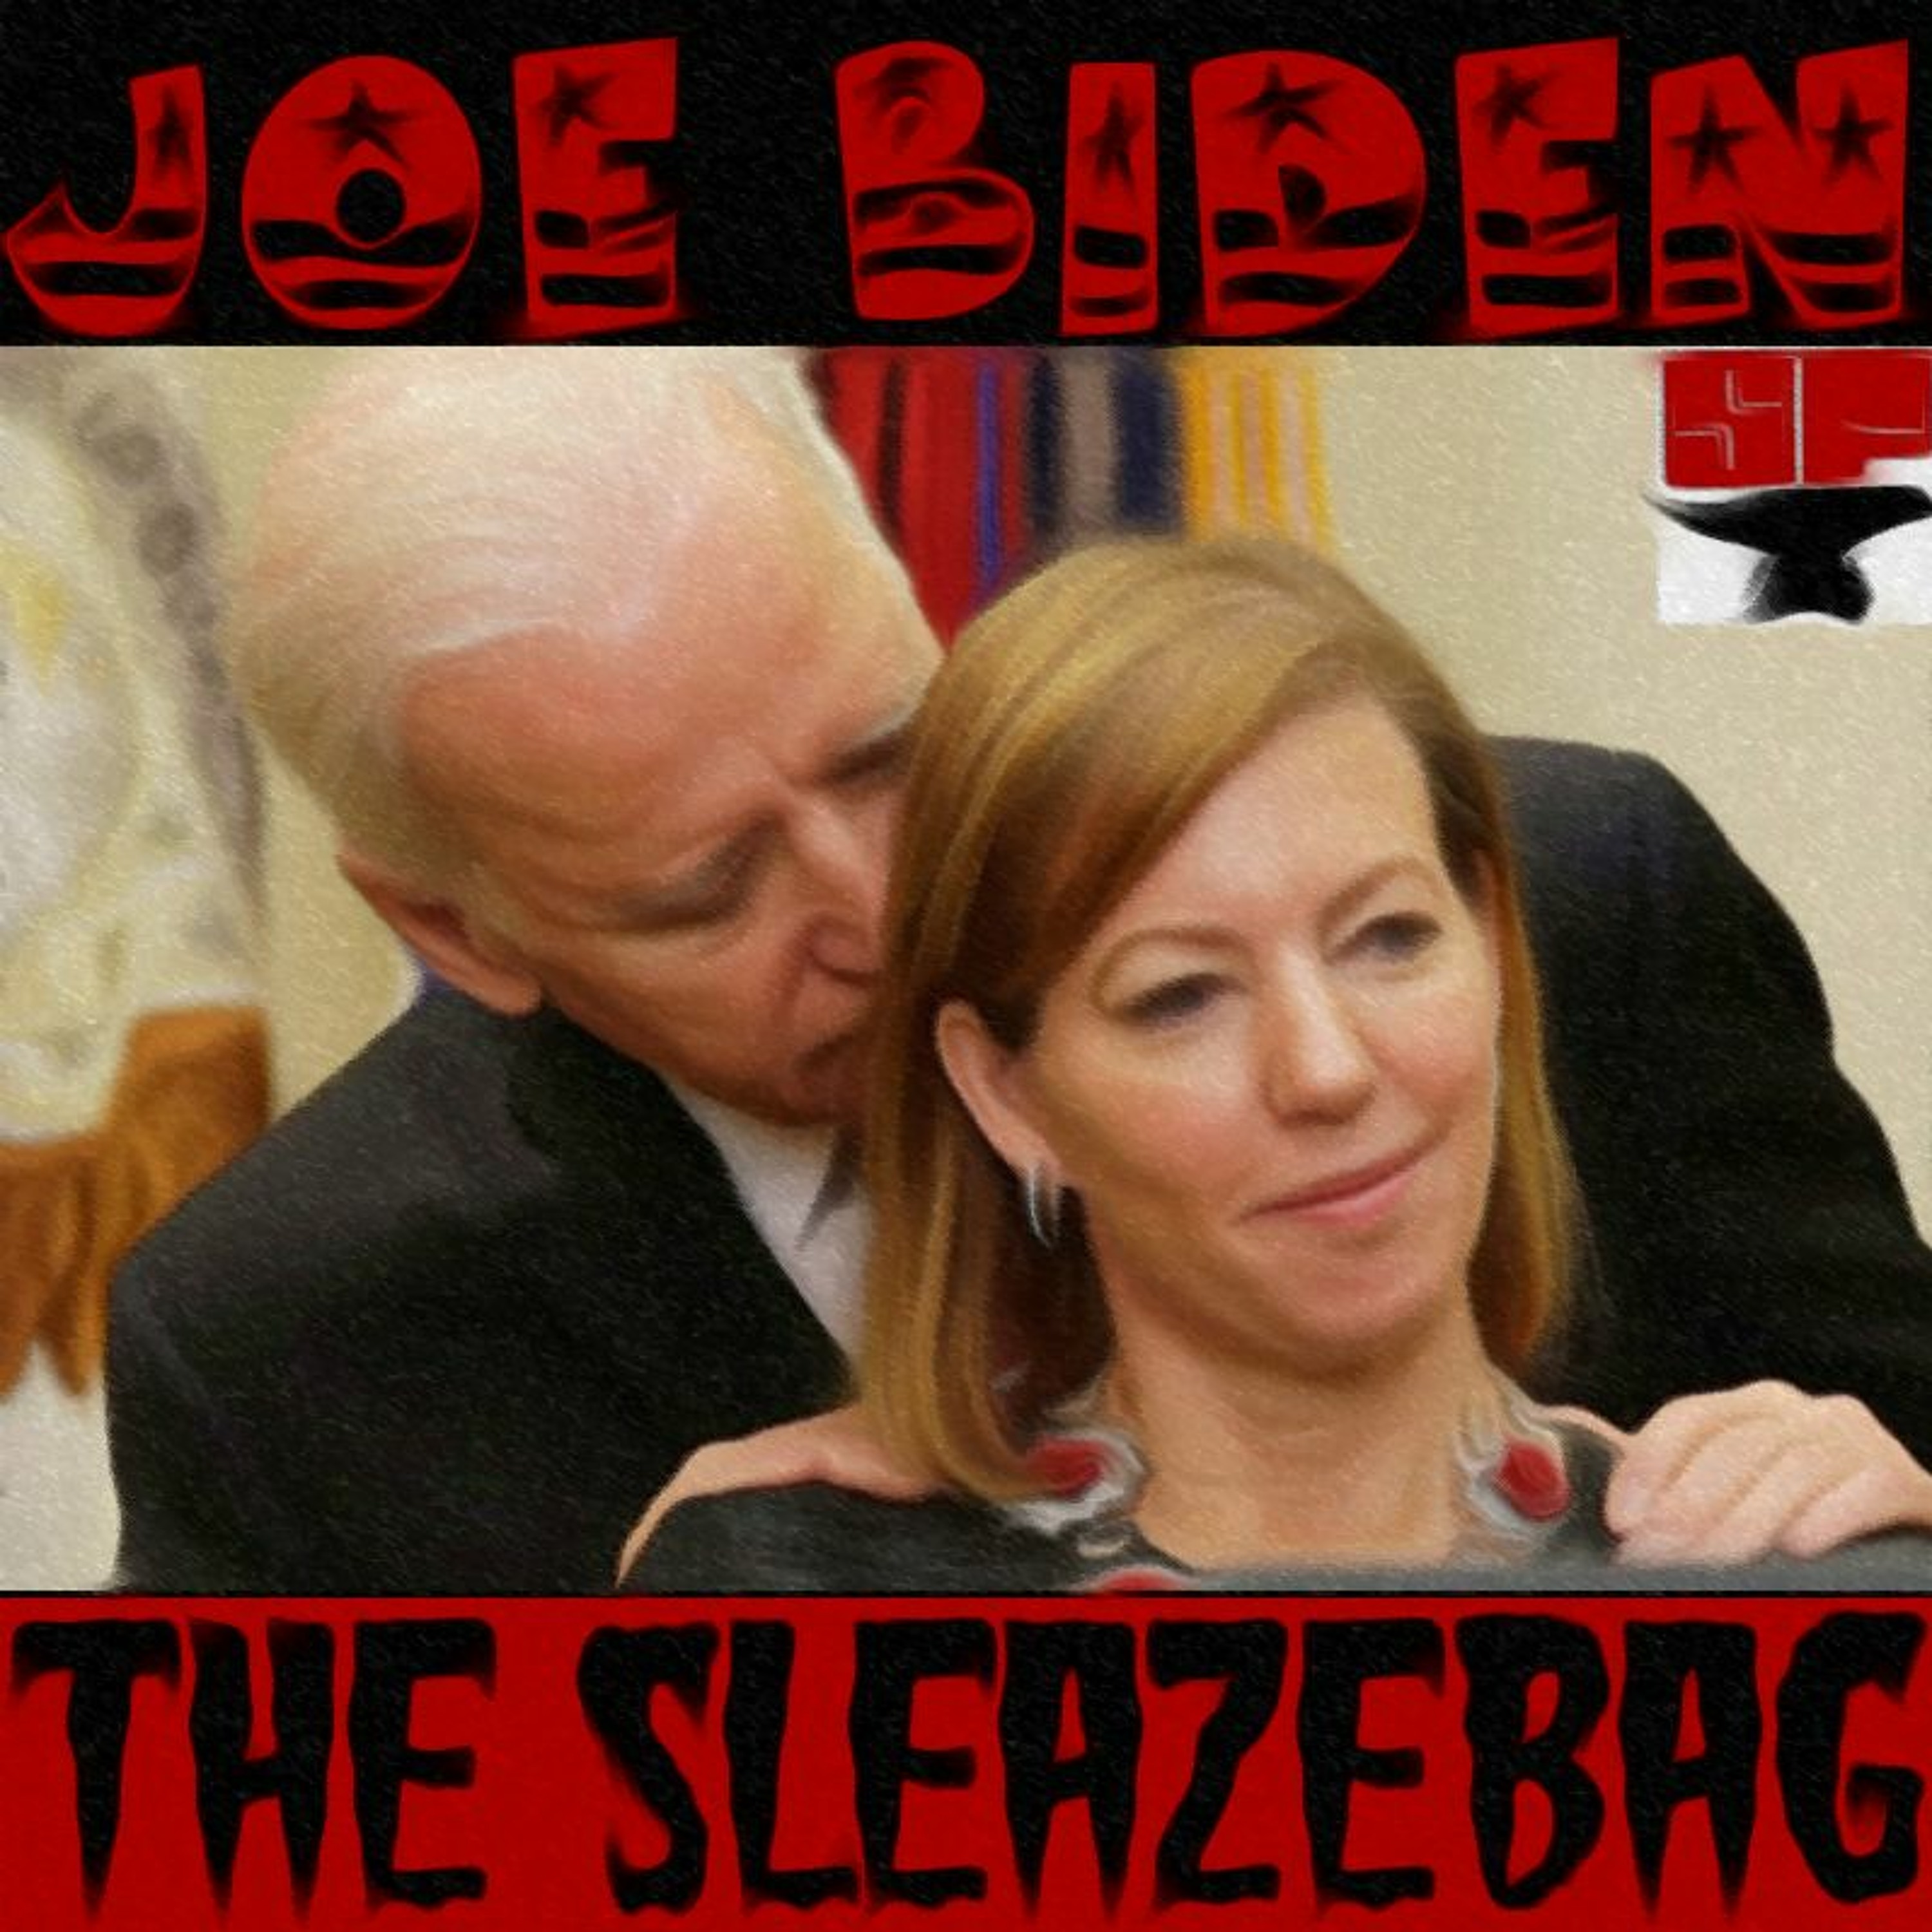 Joe Biden The Sleazebag